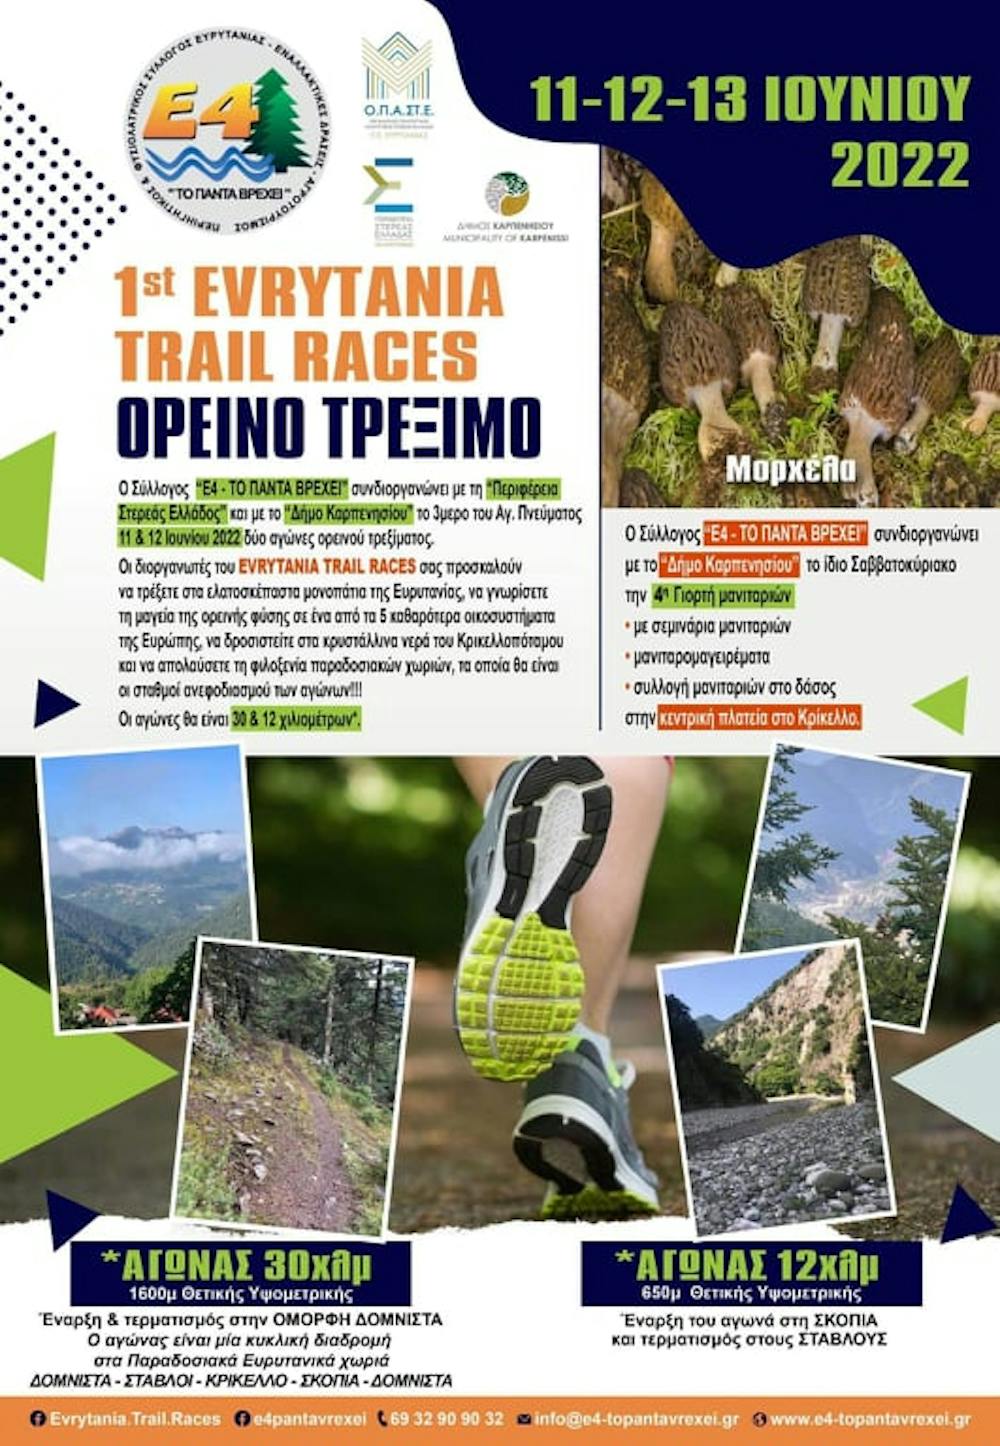 Η προκήρυξη και η αφίσα των Evritania Trail Races 2022 (Pic) runbeat.gr 